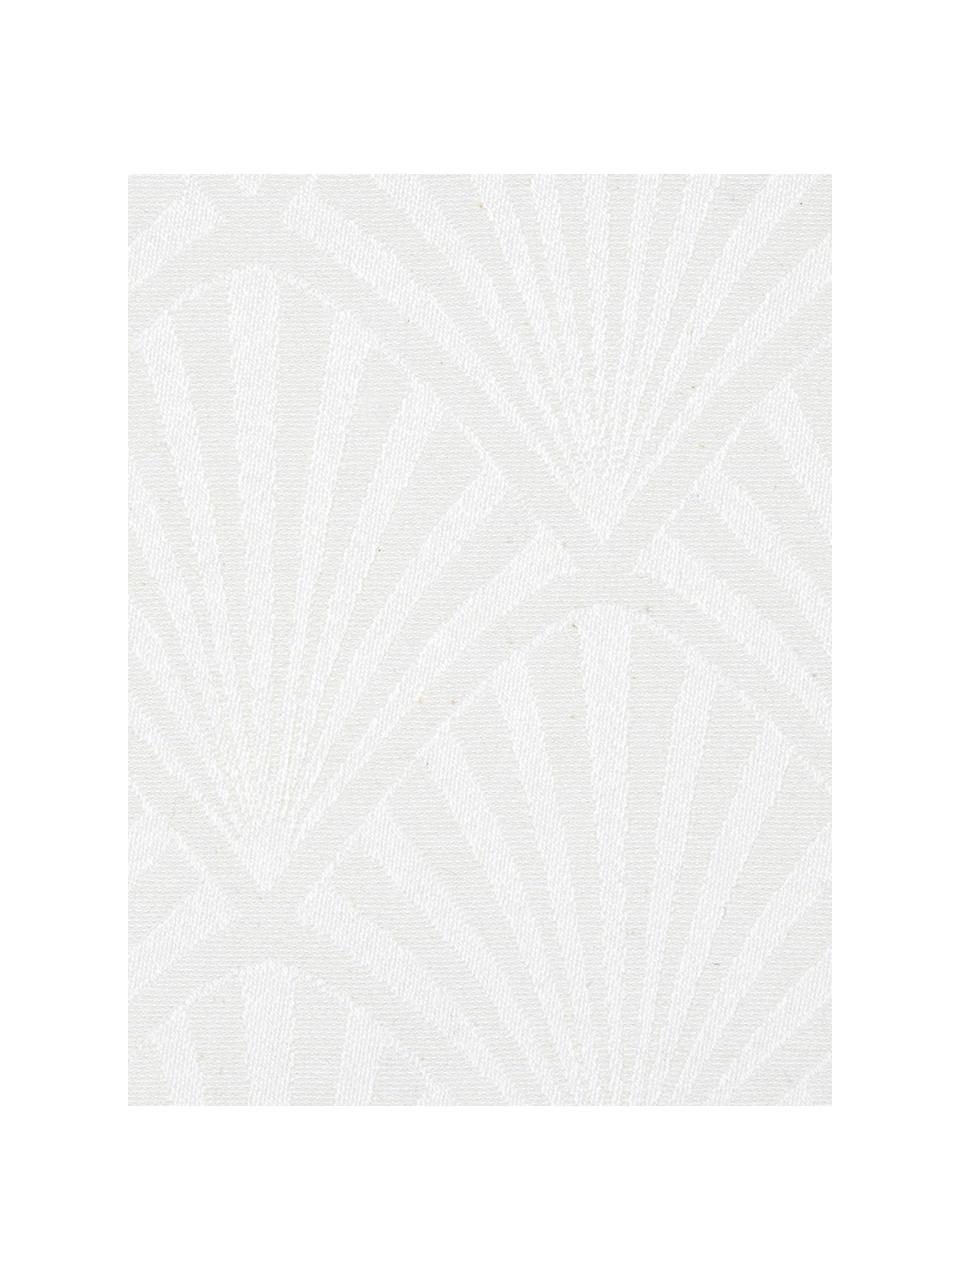 Stoffen servetten Celine met Art decoratieve patroon, 4 stuks, Weeftechniek: jacquard, Wit, 40 x 40 cm